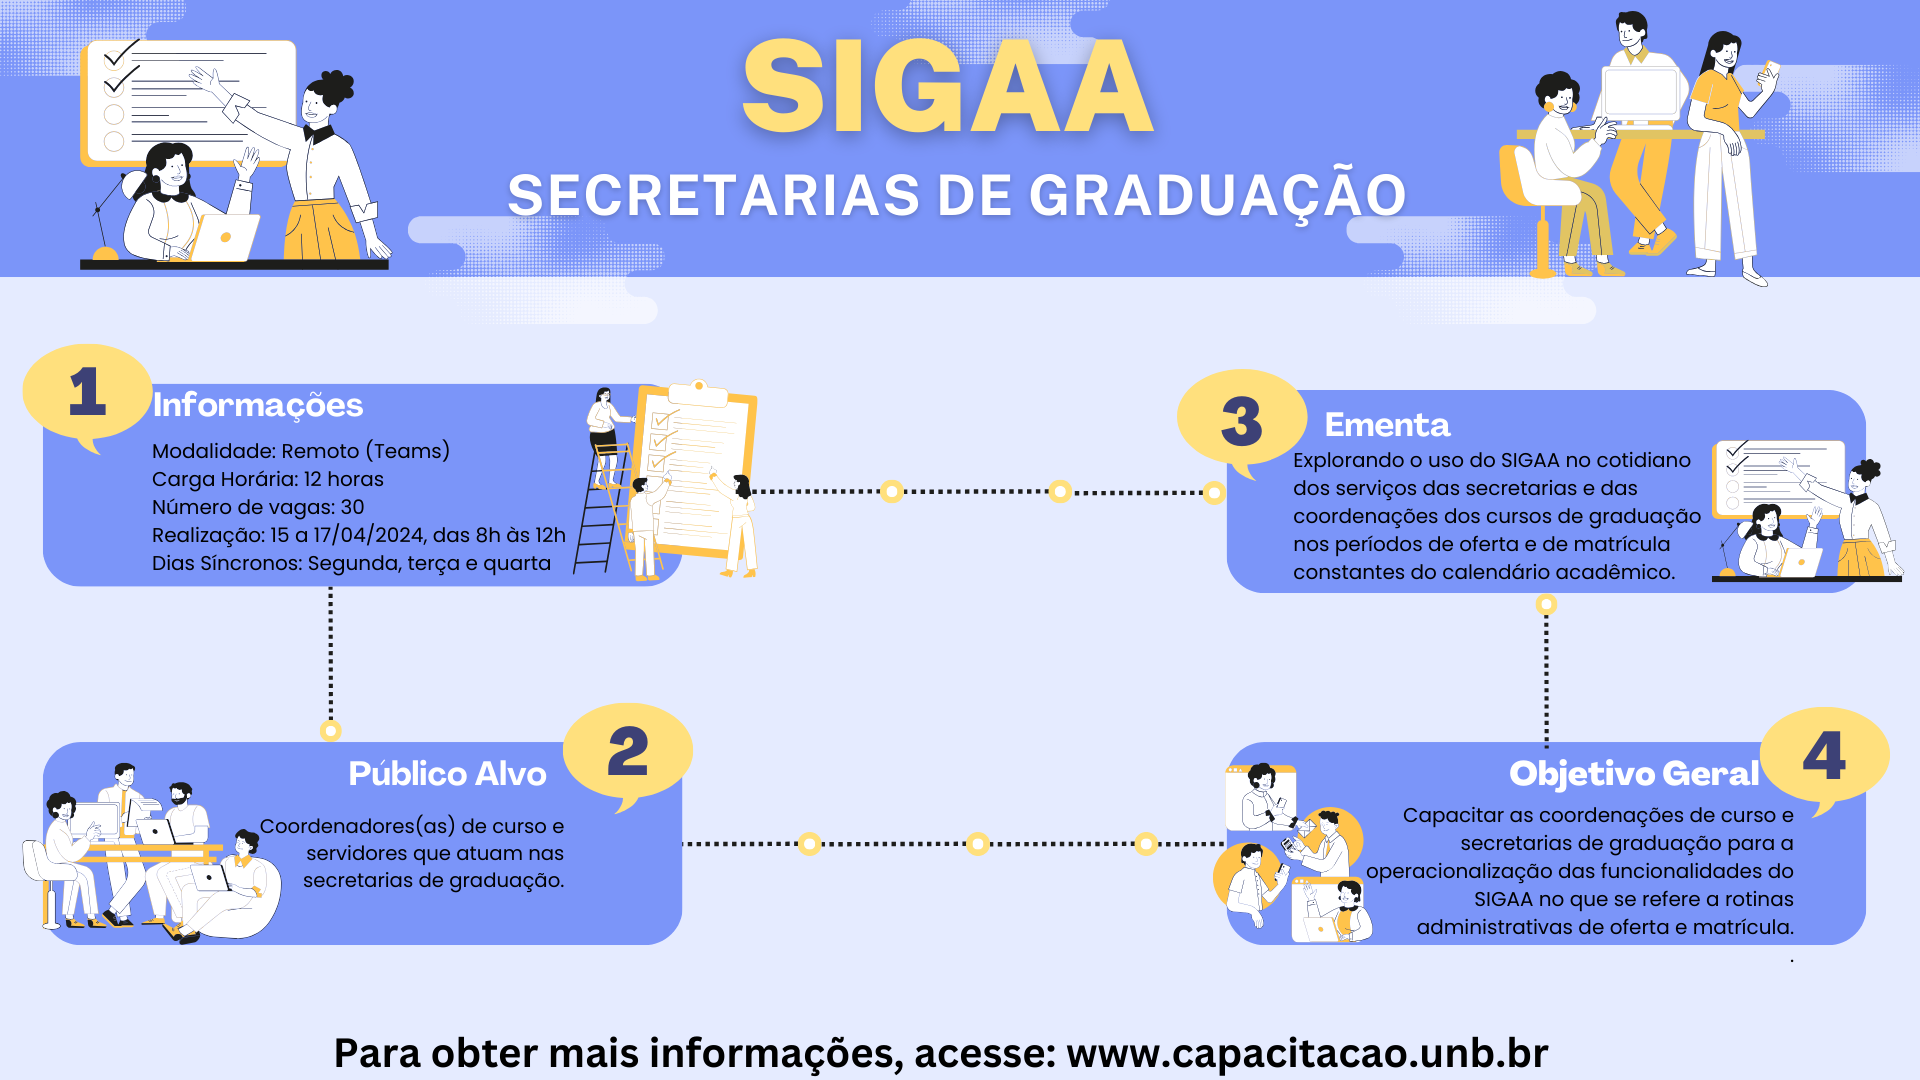 Sigaa_Secretarias_de_Graduação_-_Facebook.png